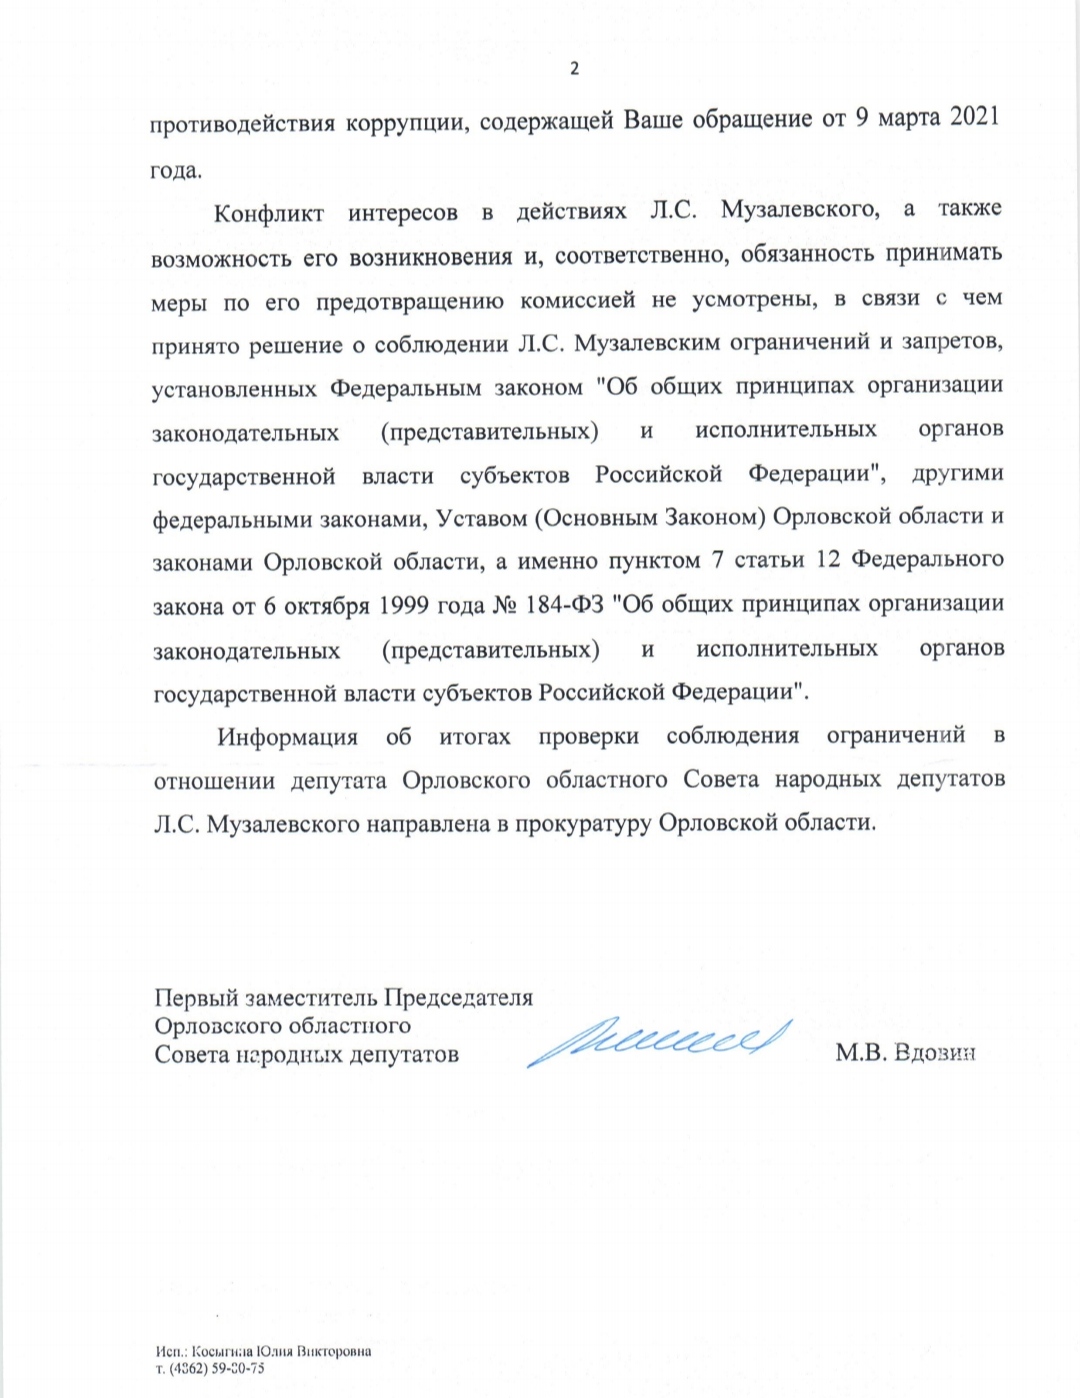 Ответ заместителя председателя облсовета Вдовина о том, что председатель облсовета Музалевский и конфликт интересов - несовместимые понятия